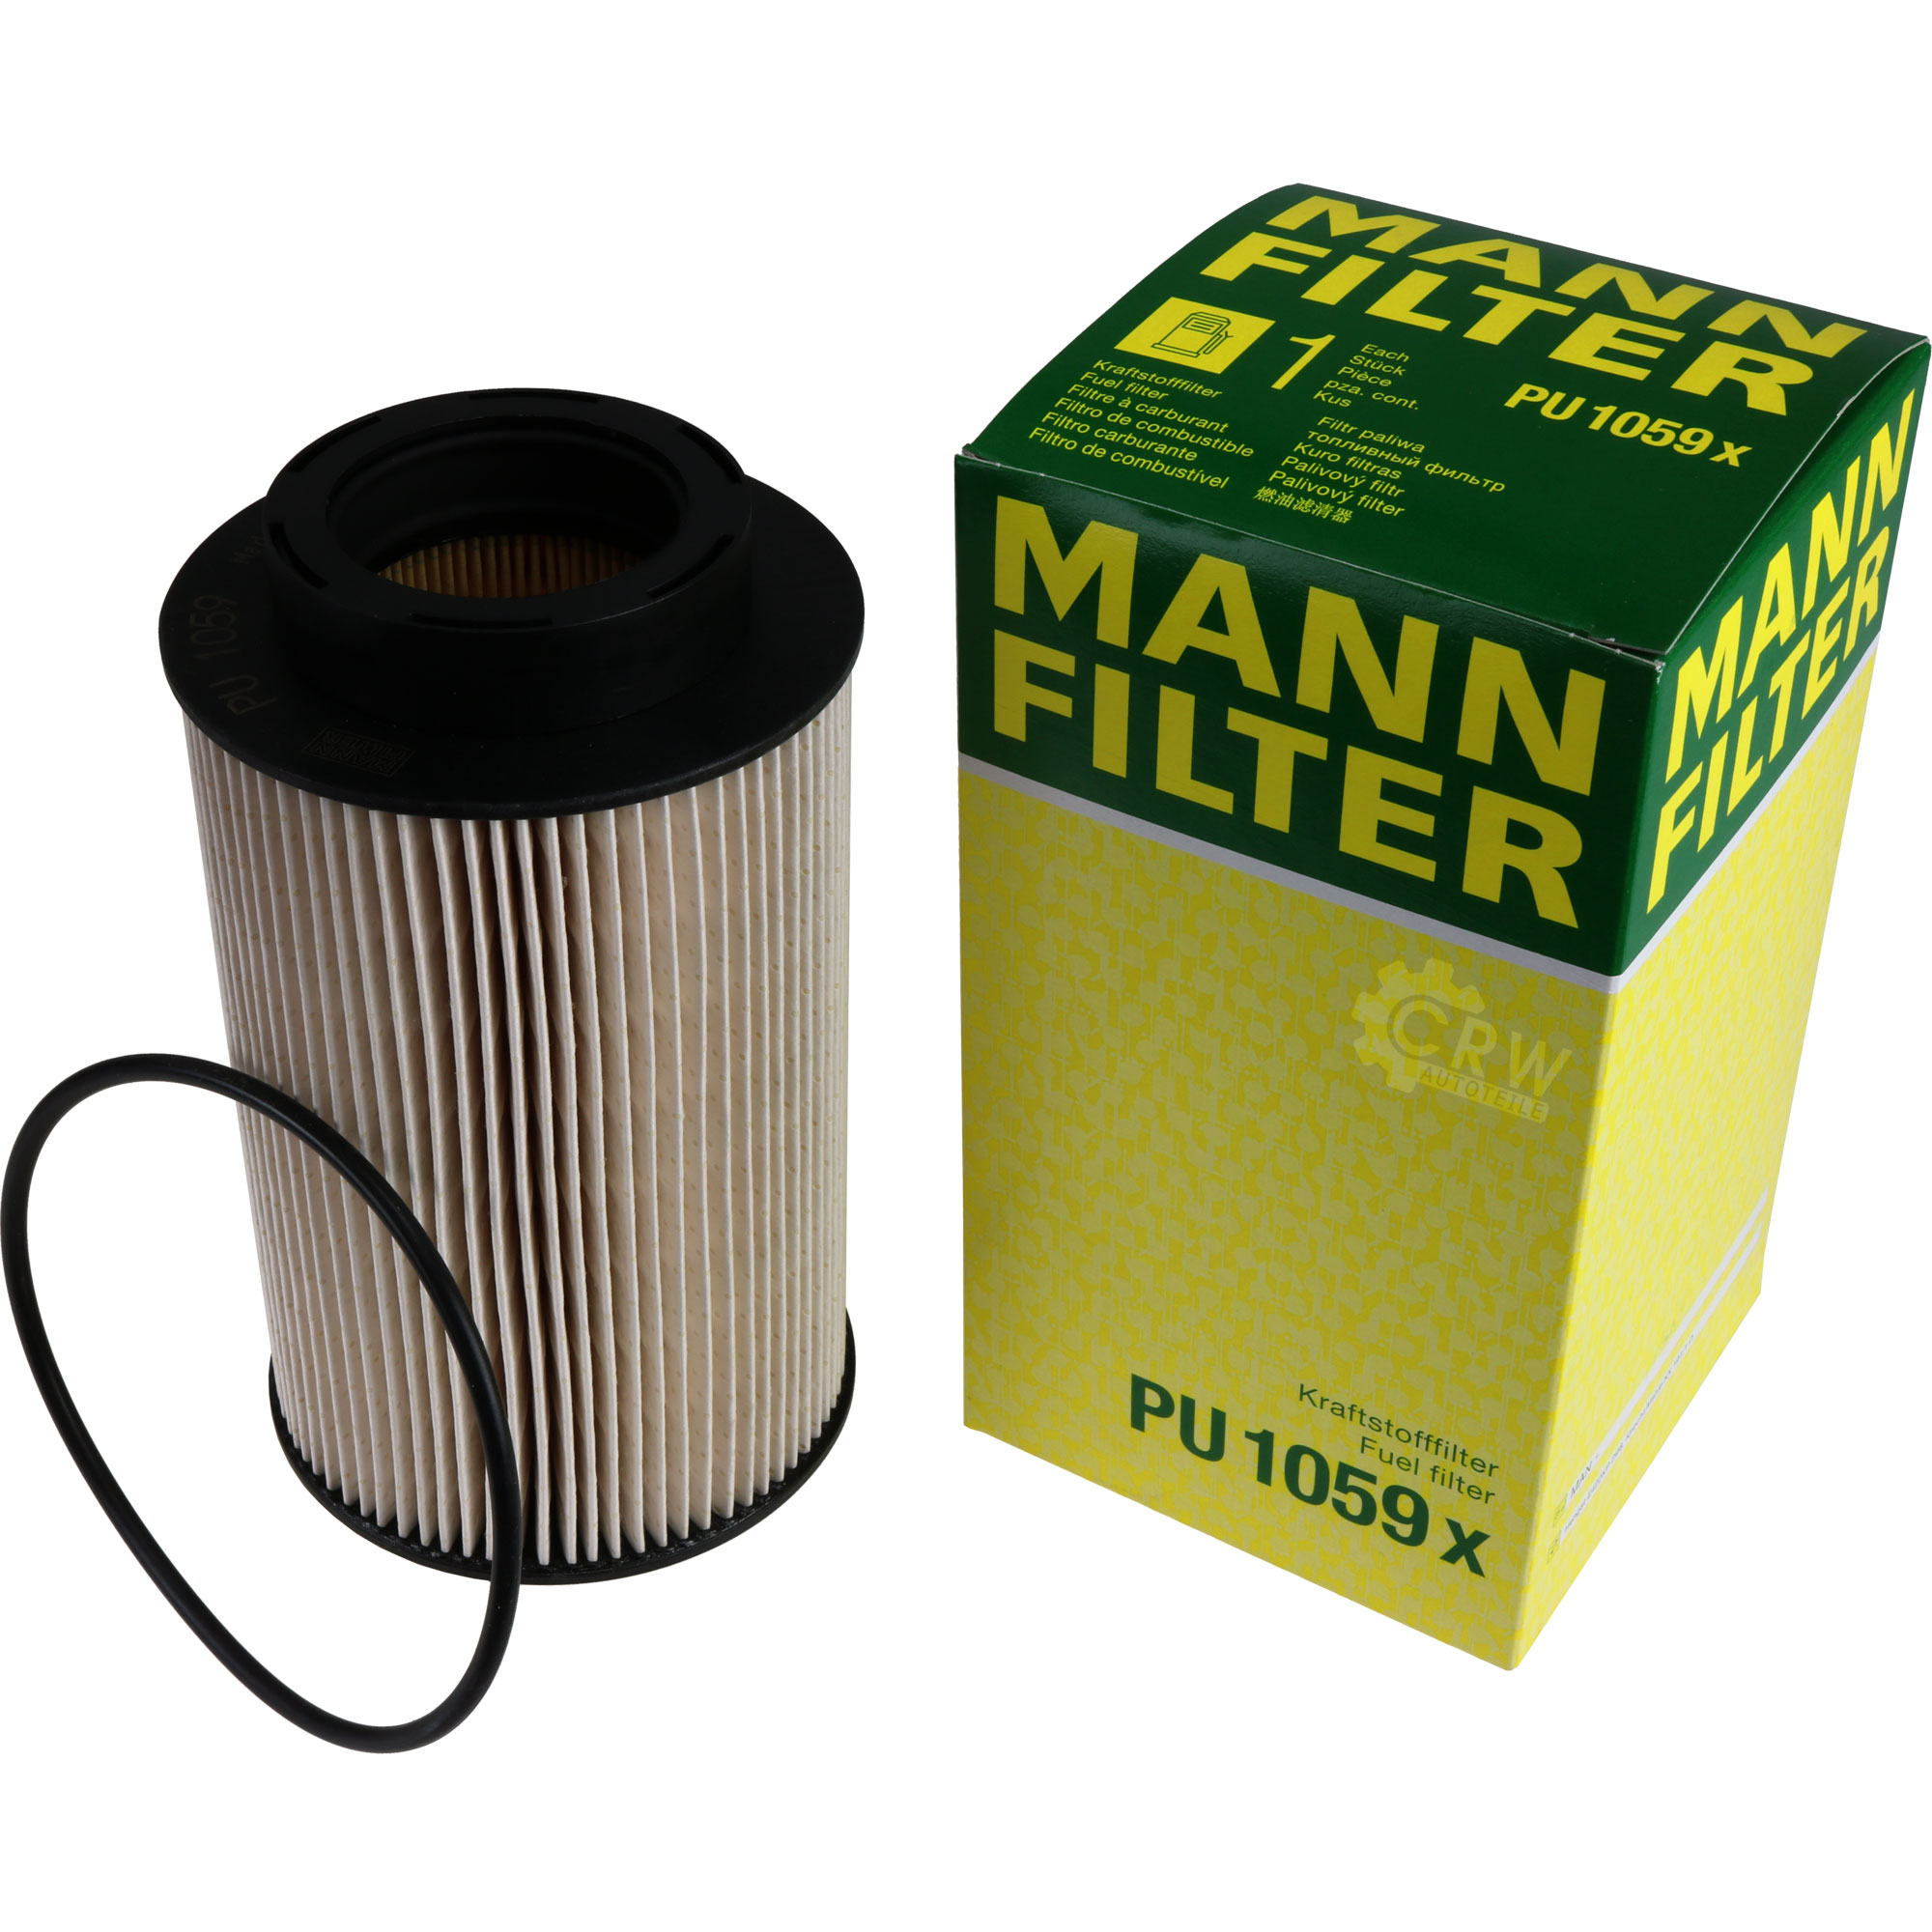 MANN-FILTER Kraftstofffilter PU 1059 x Fuel Filter